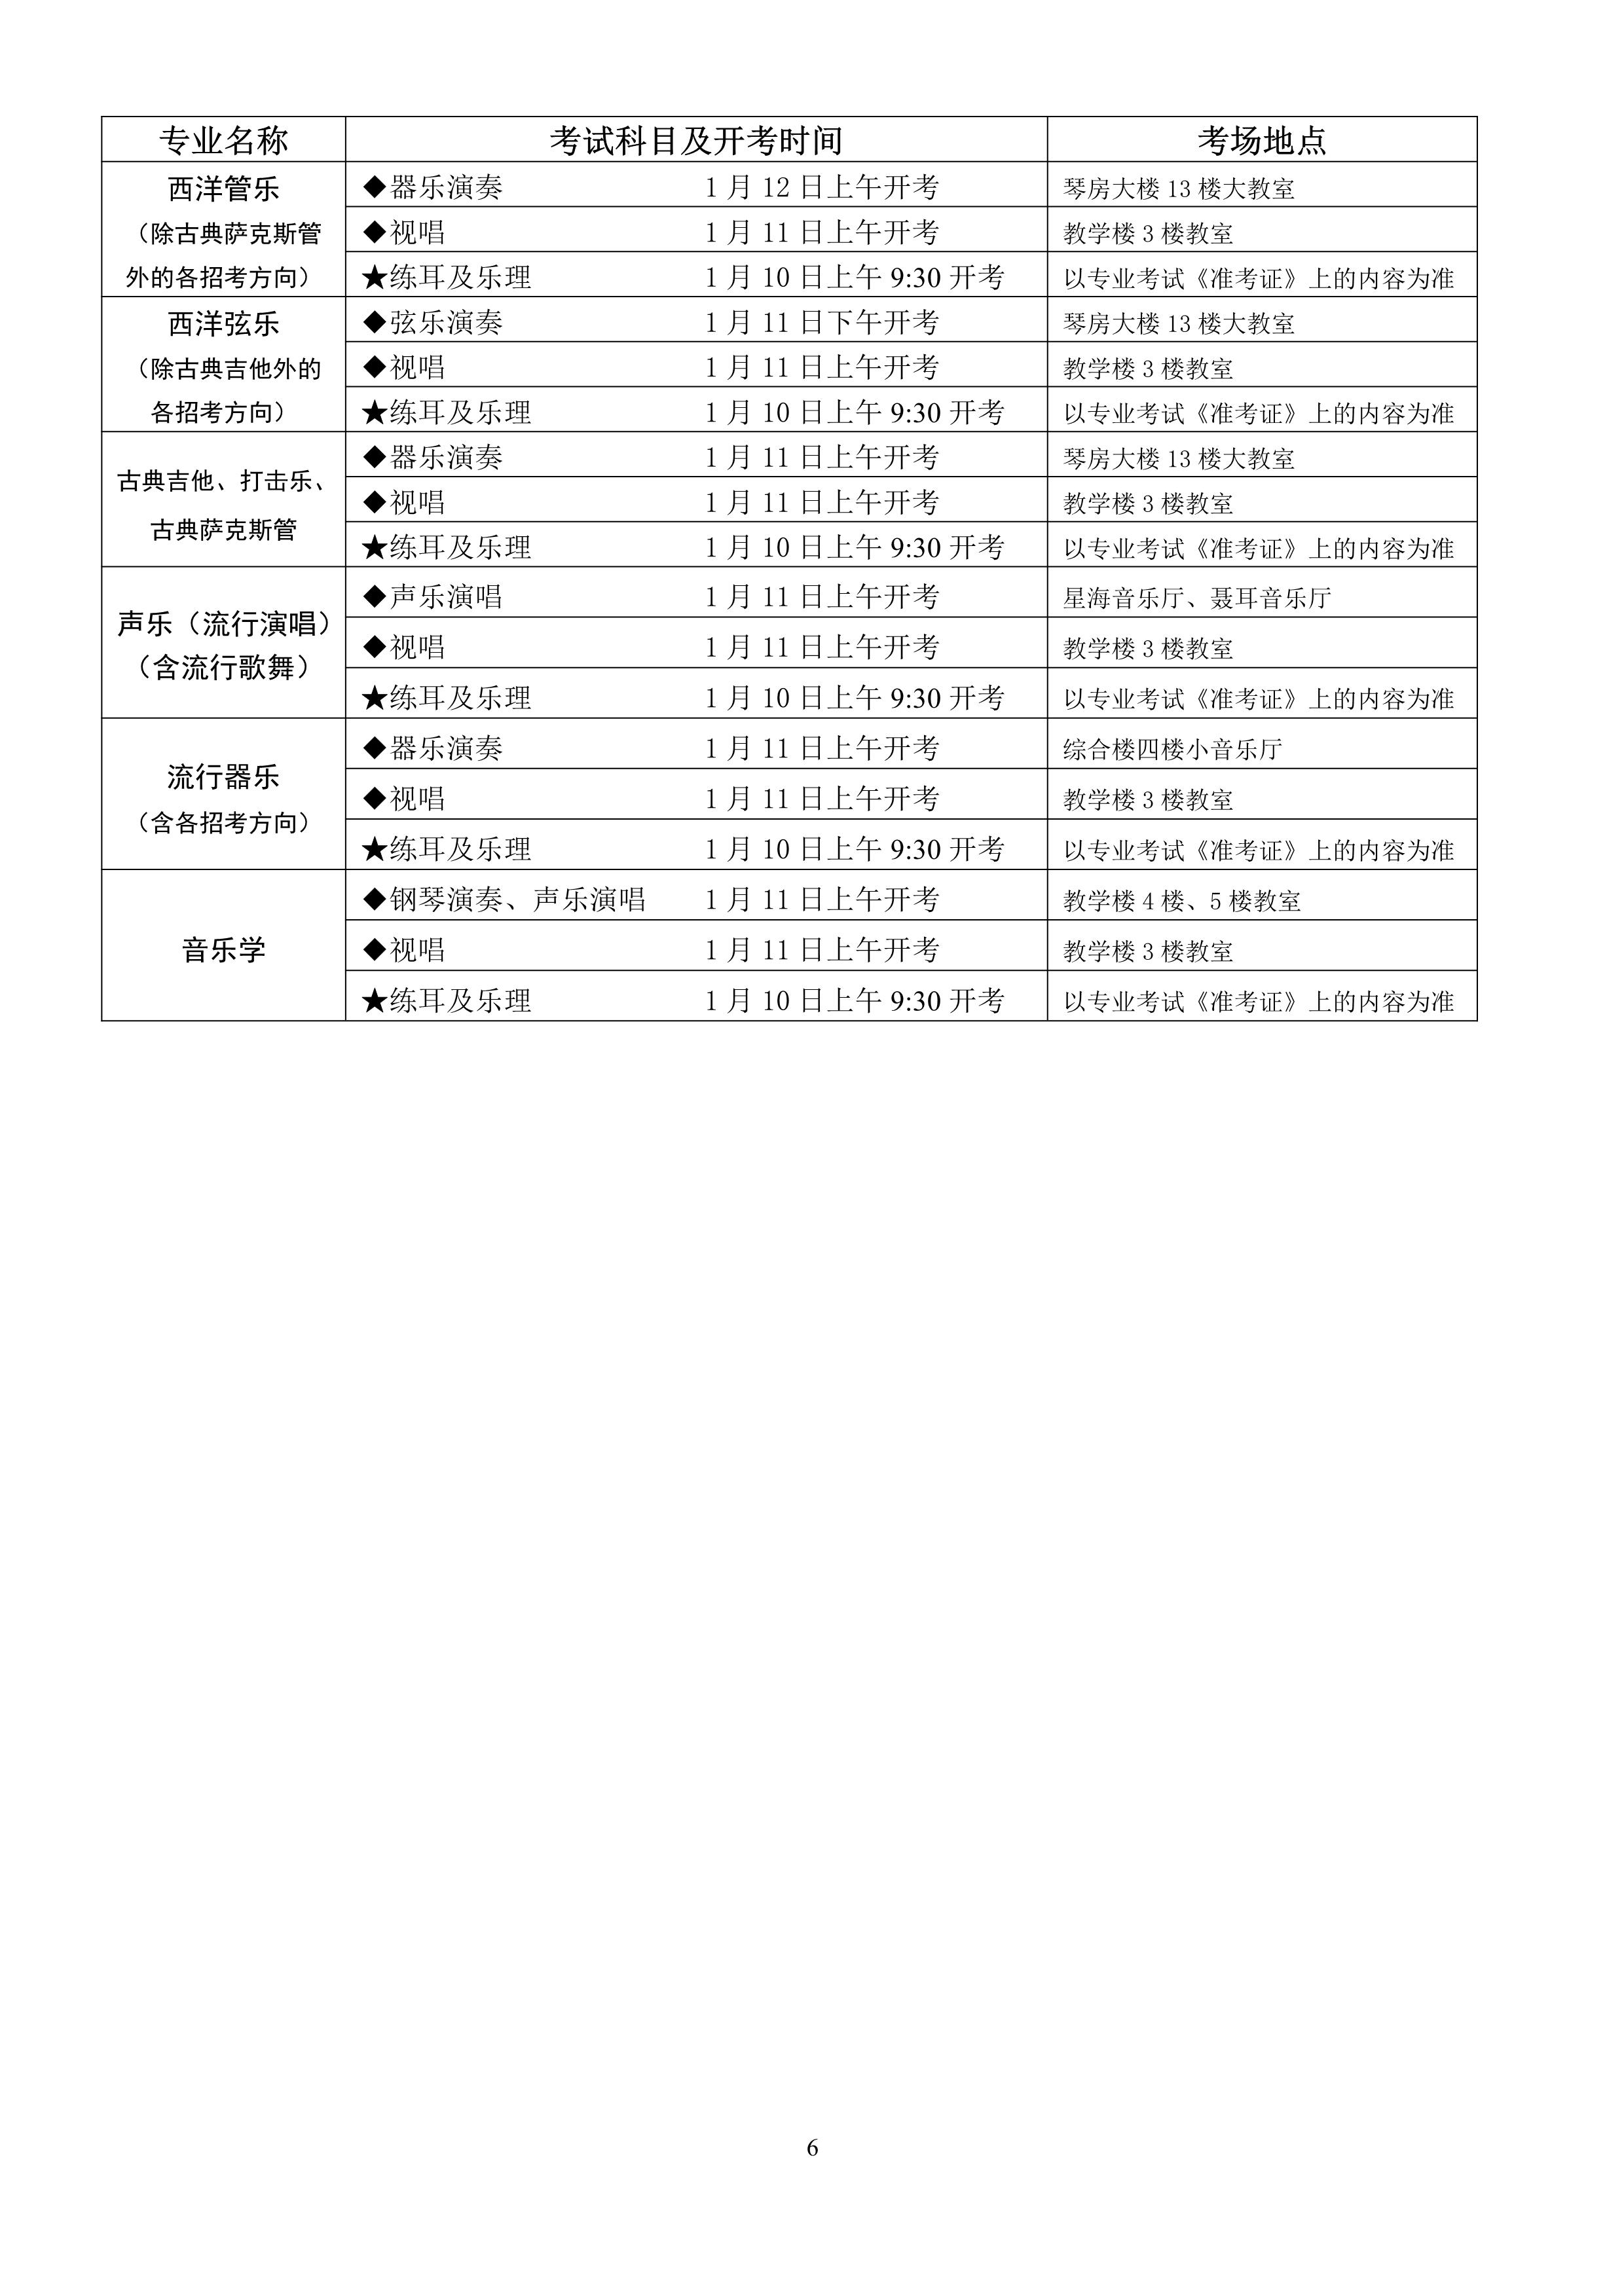 1.四川省2021年普通高校招生音乐类专业考试考生须知_6.jpg